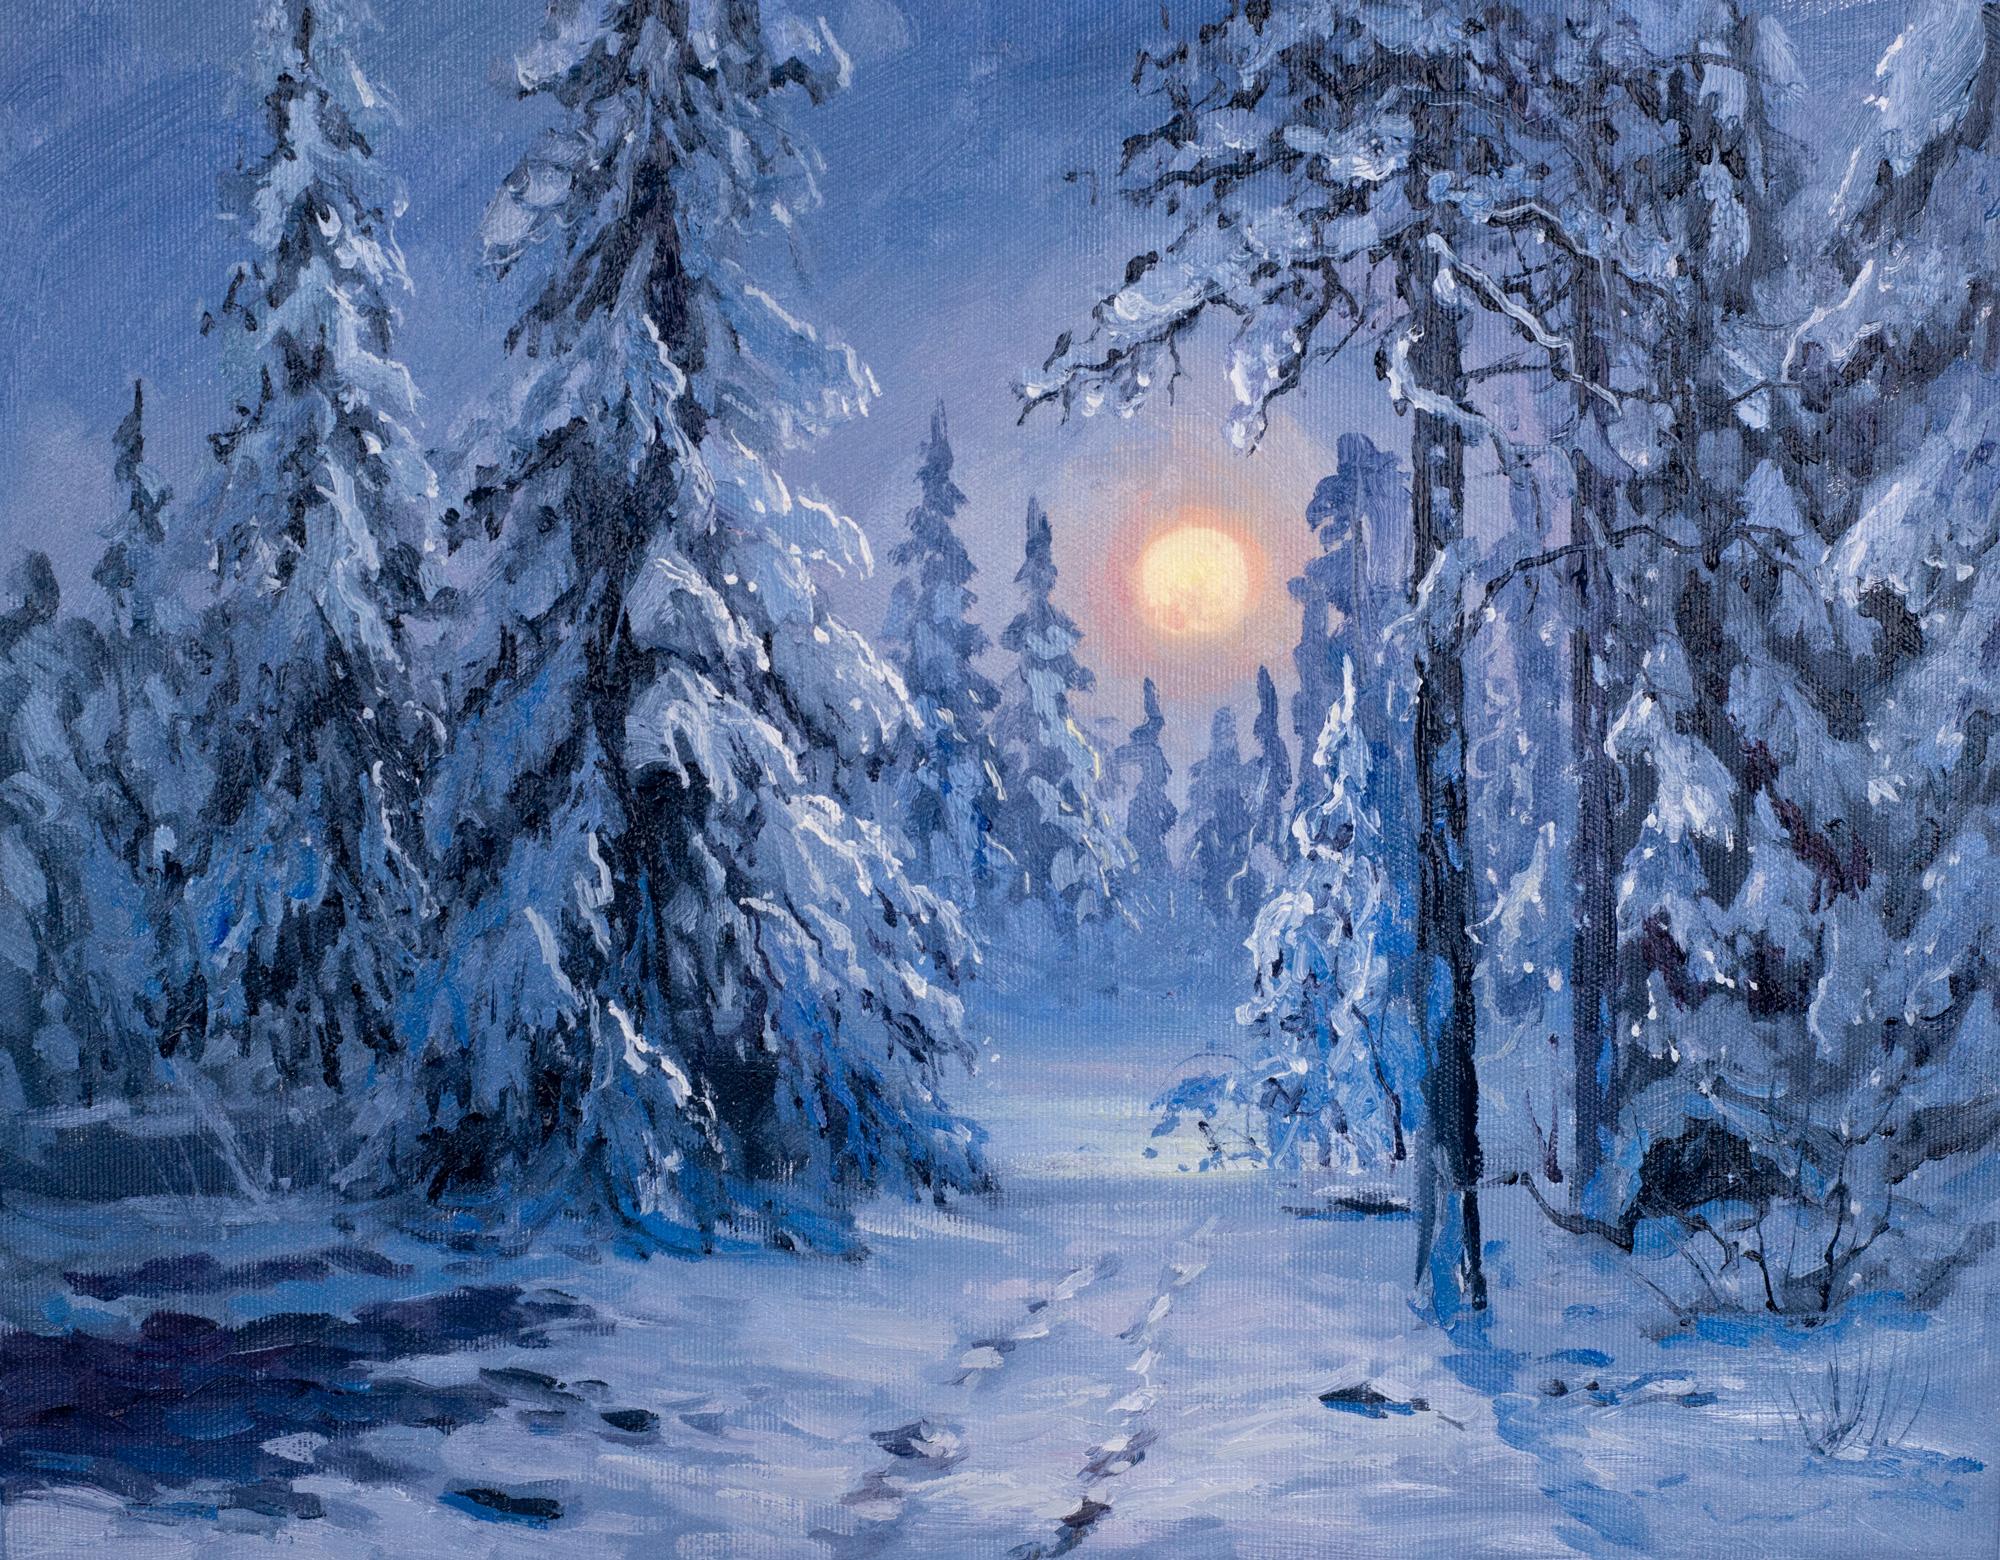 Деревья зимой покрыты снегом Стоковые фотографии, картинки, все без  лицензионных отчислений - Envato Elements